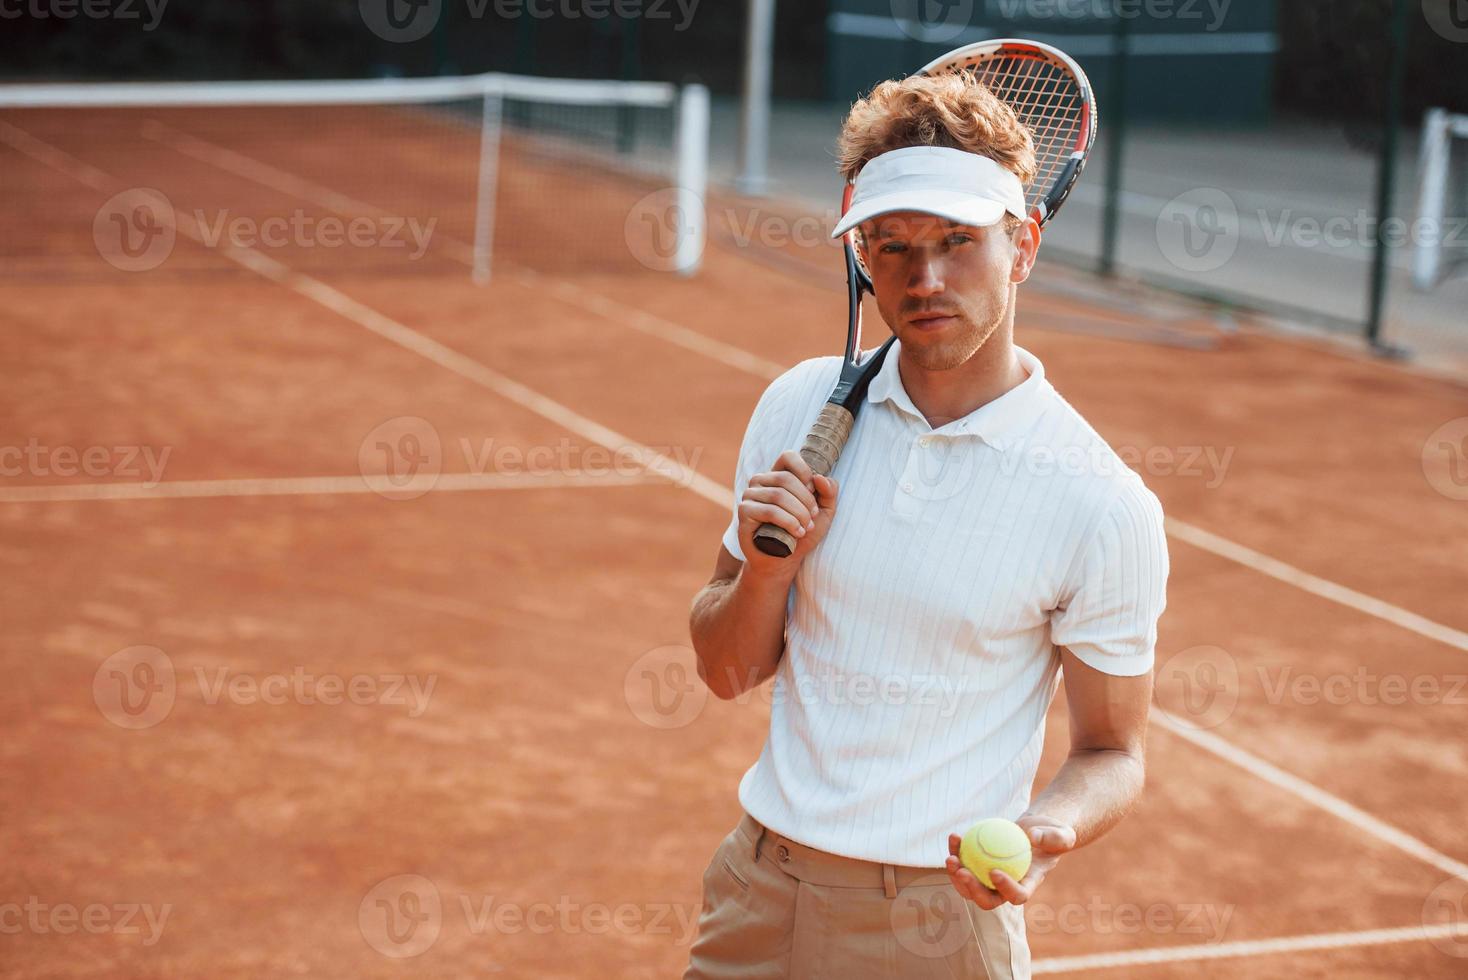 tiene la pelota en la mano. joven tenista con ropa deportiva está en la cancha al aire libre foto